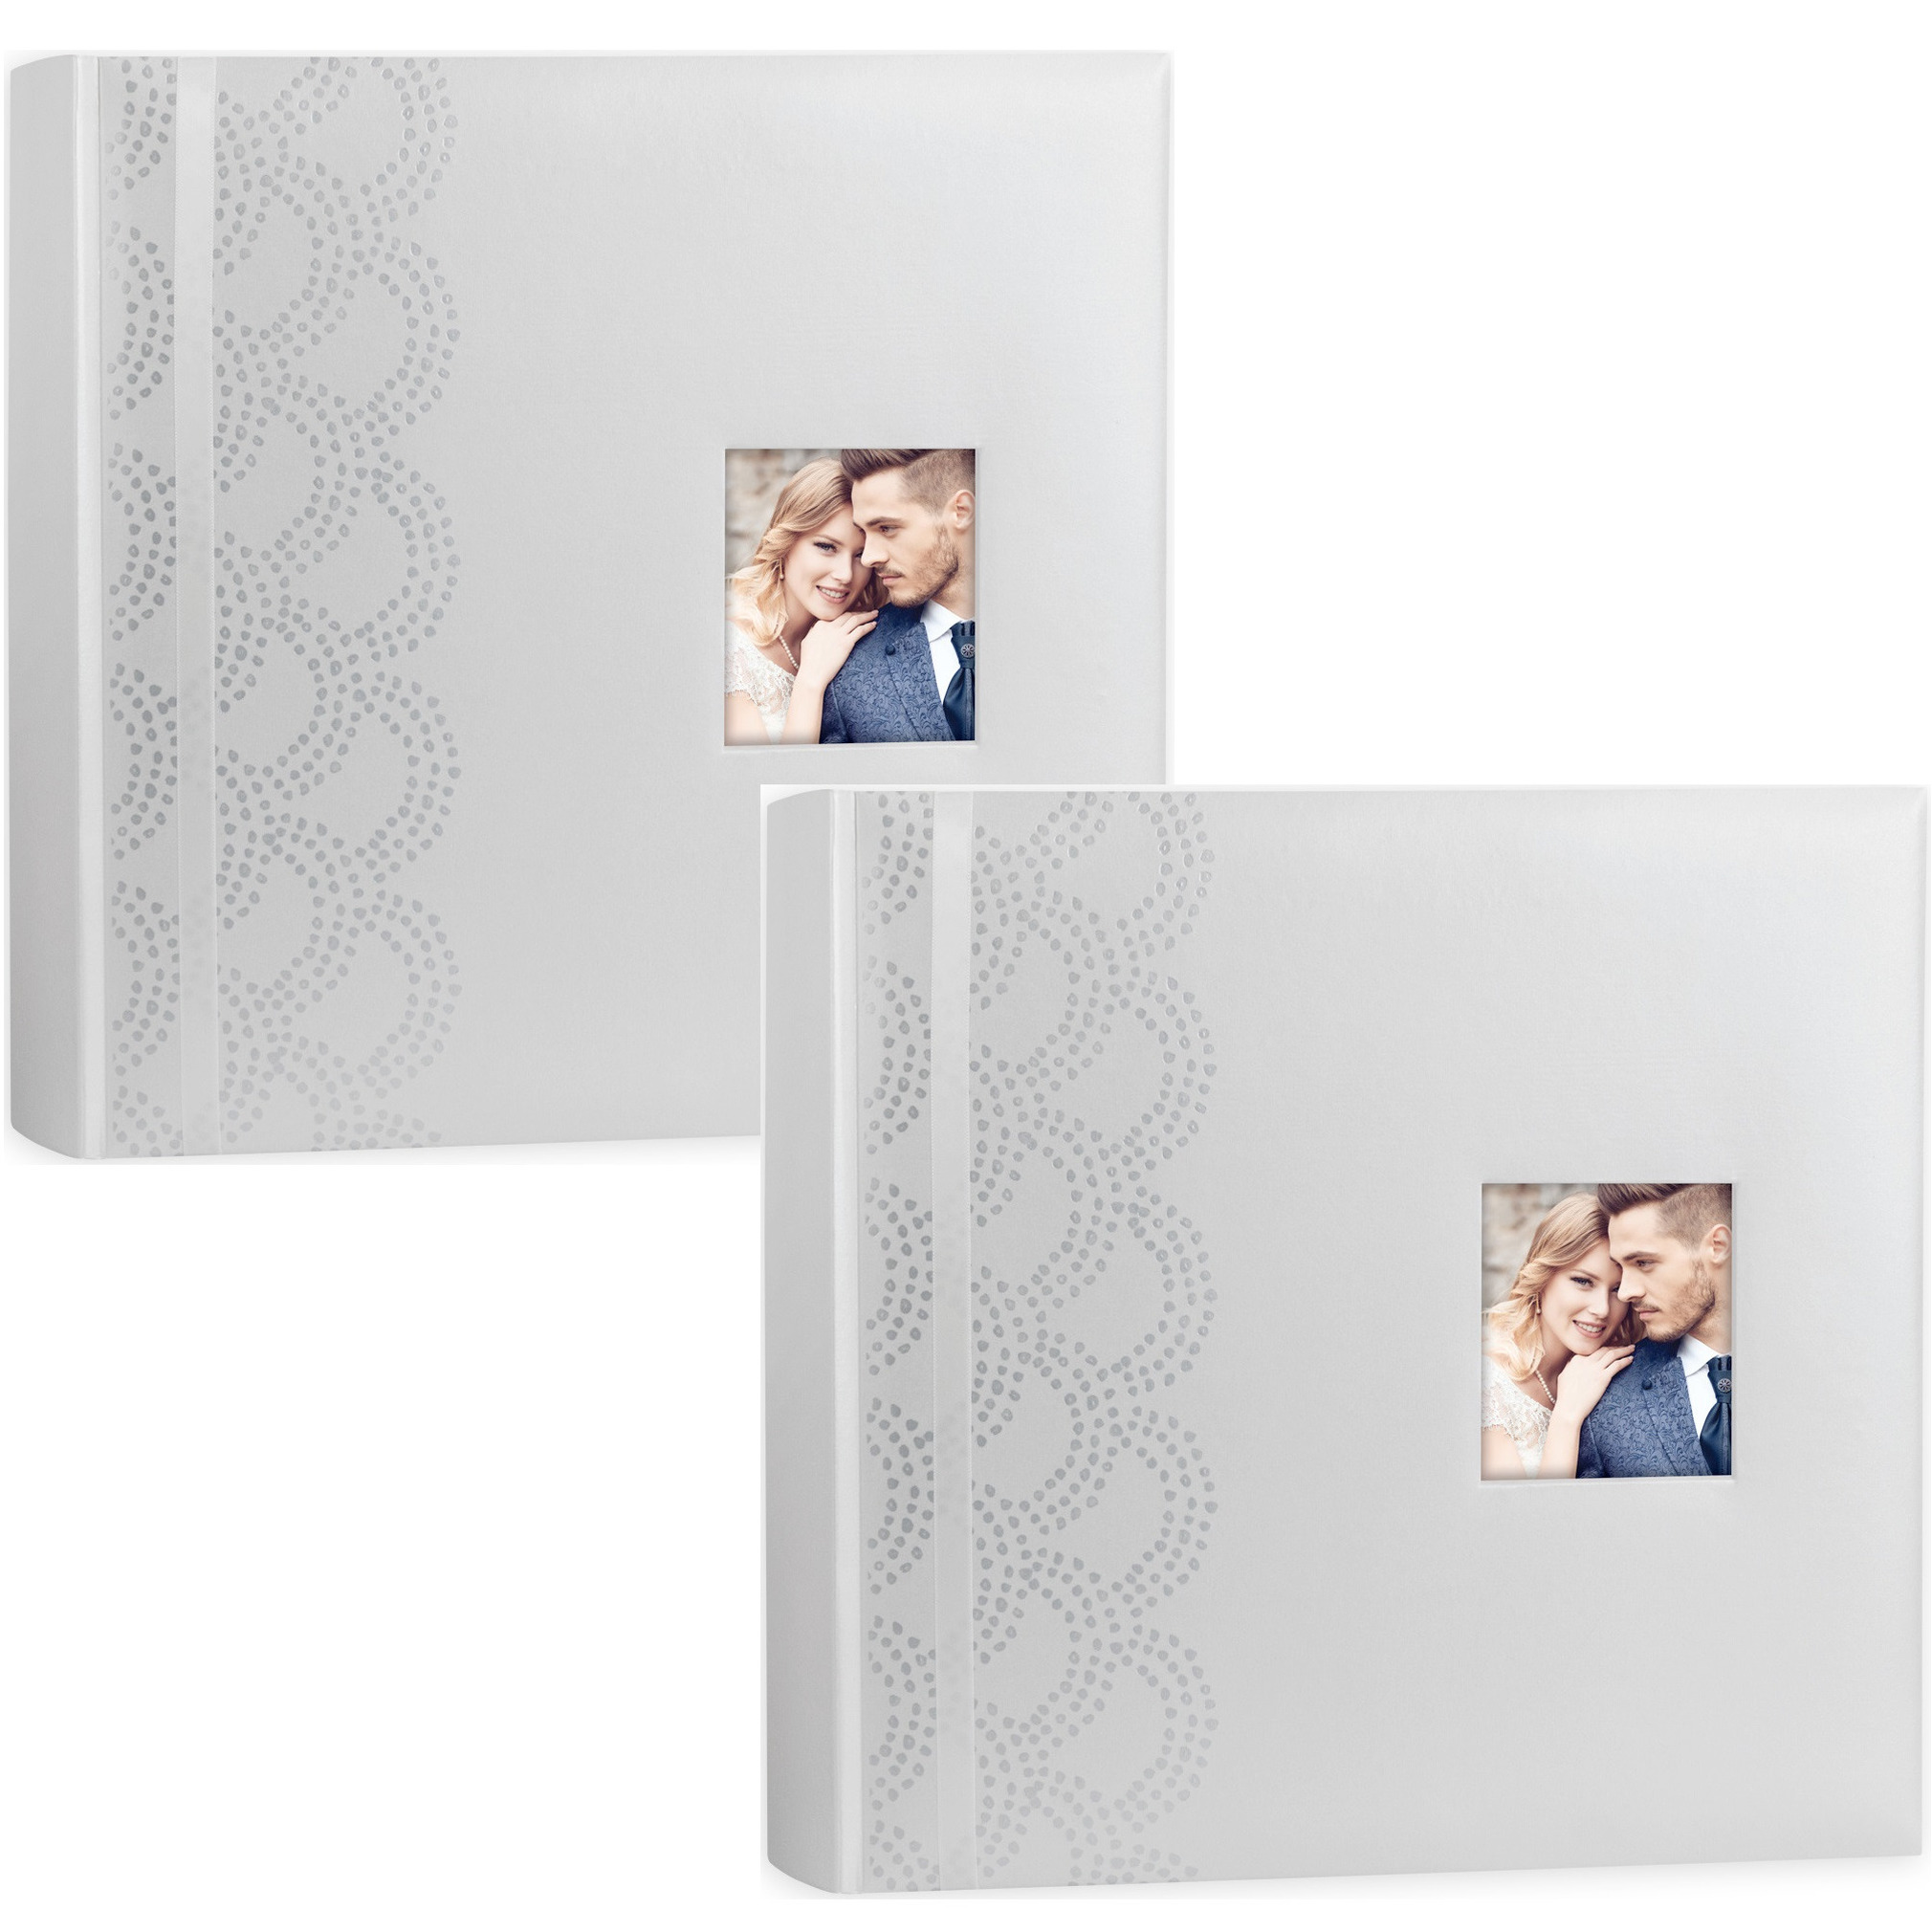 2x Luxe fotoboek-fotoalbum Anais bruiloft-huwelijk met 50 paginas wit 32 x 32 x 5 cm